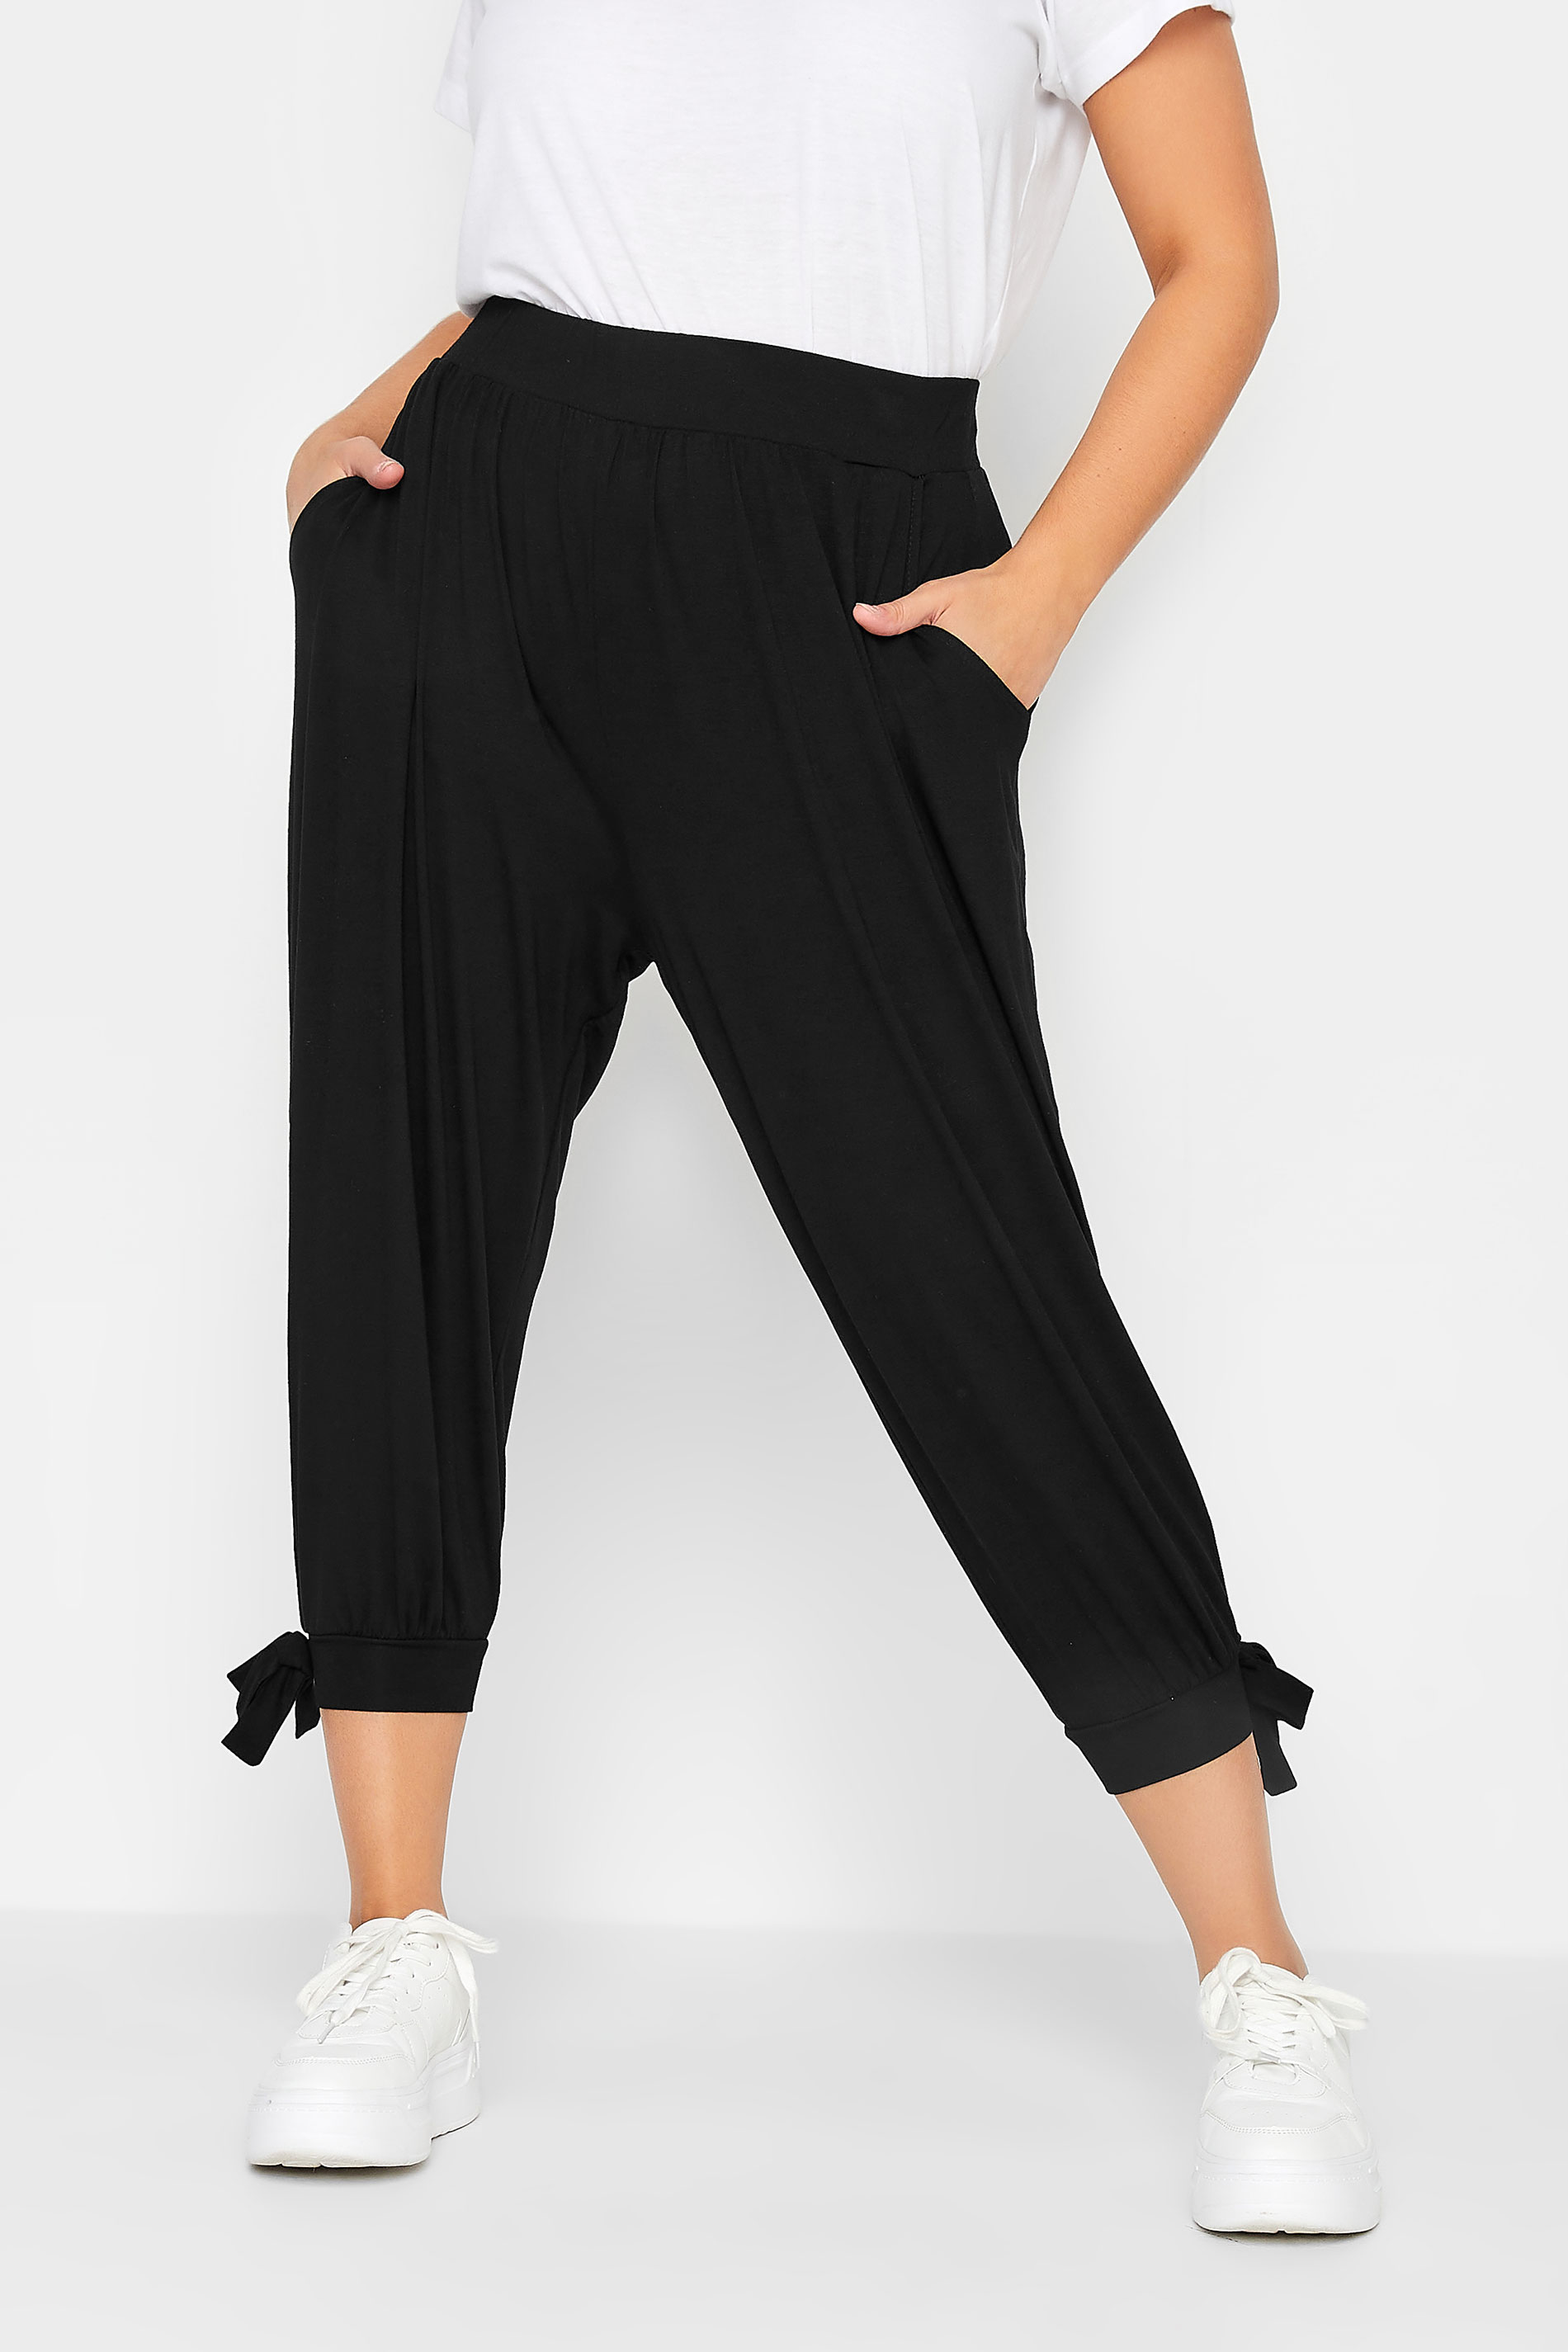 Plus Size Solid Black Harem Pants | Hippie-Pants.com – Hippie Pants